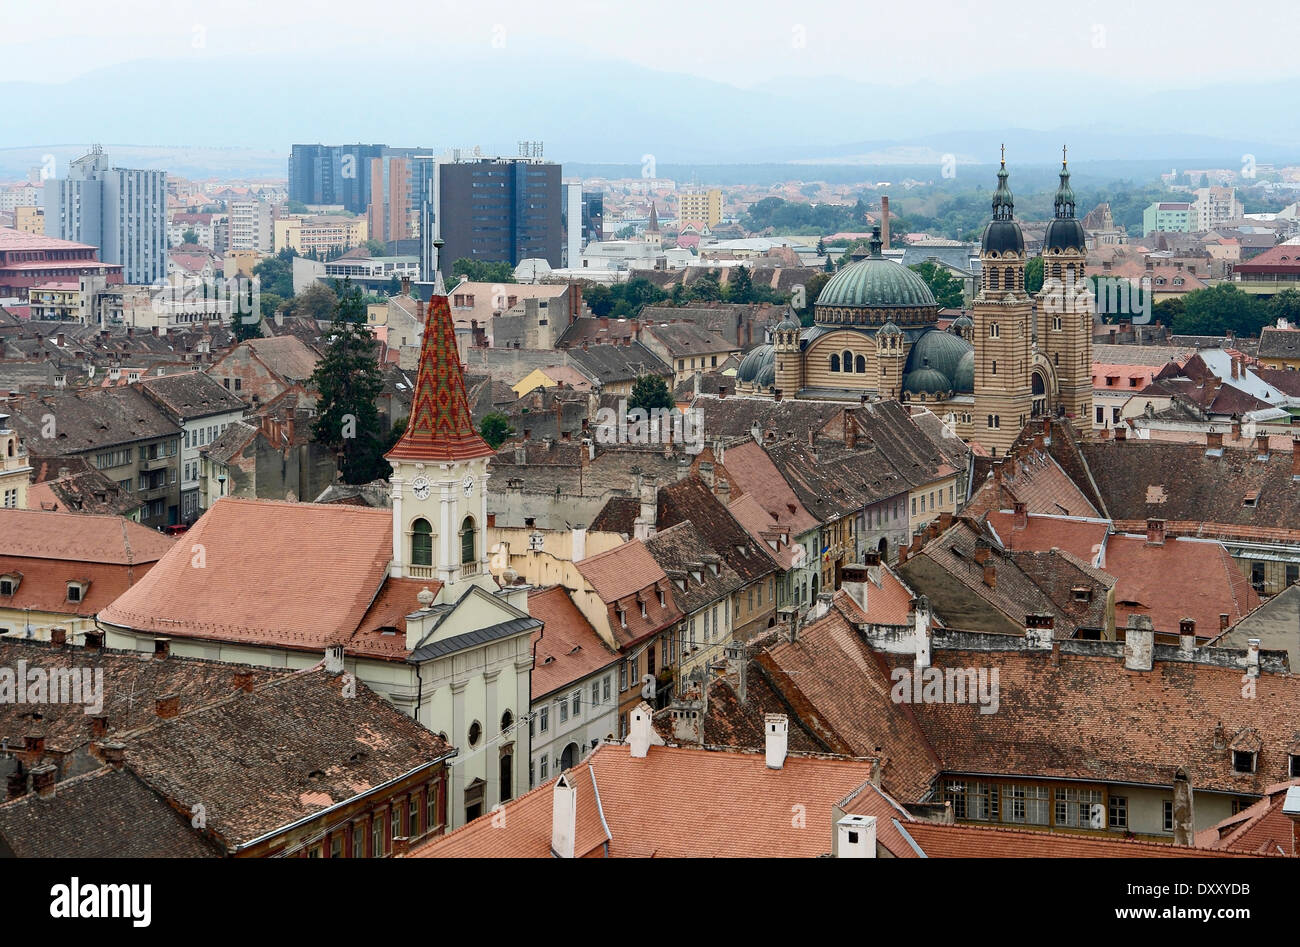 Vue aérienne de Sibiu, une ville en Roumanie Banque D'Images